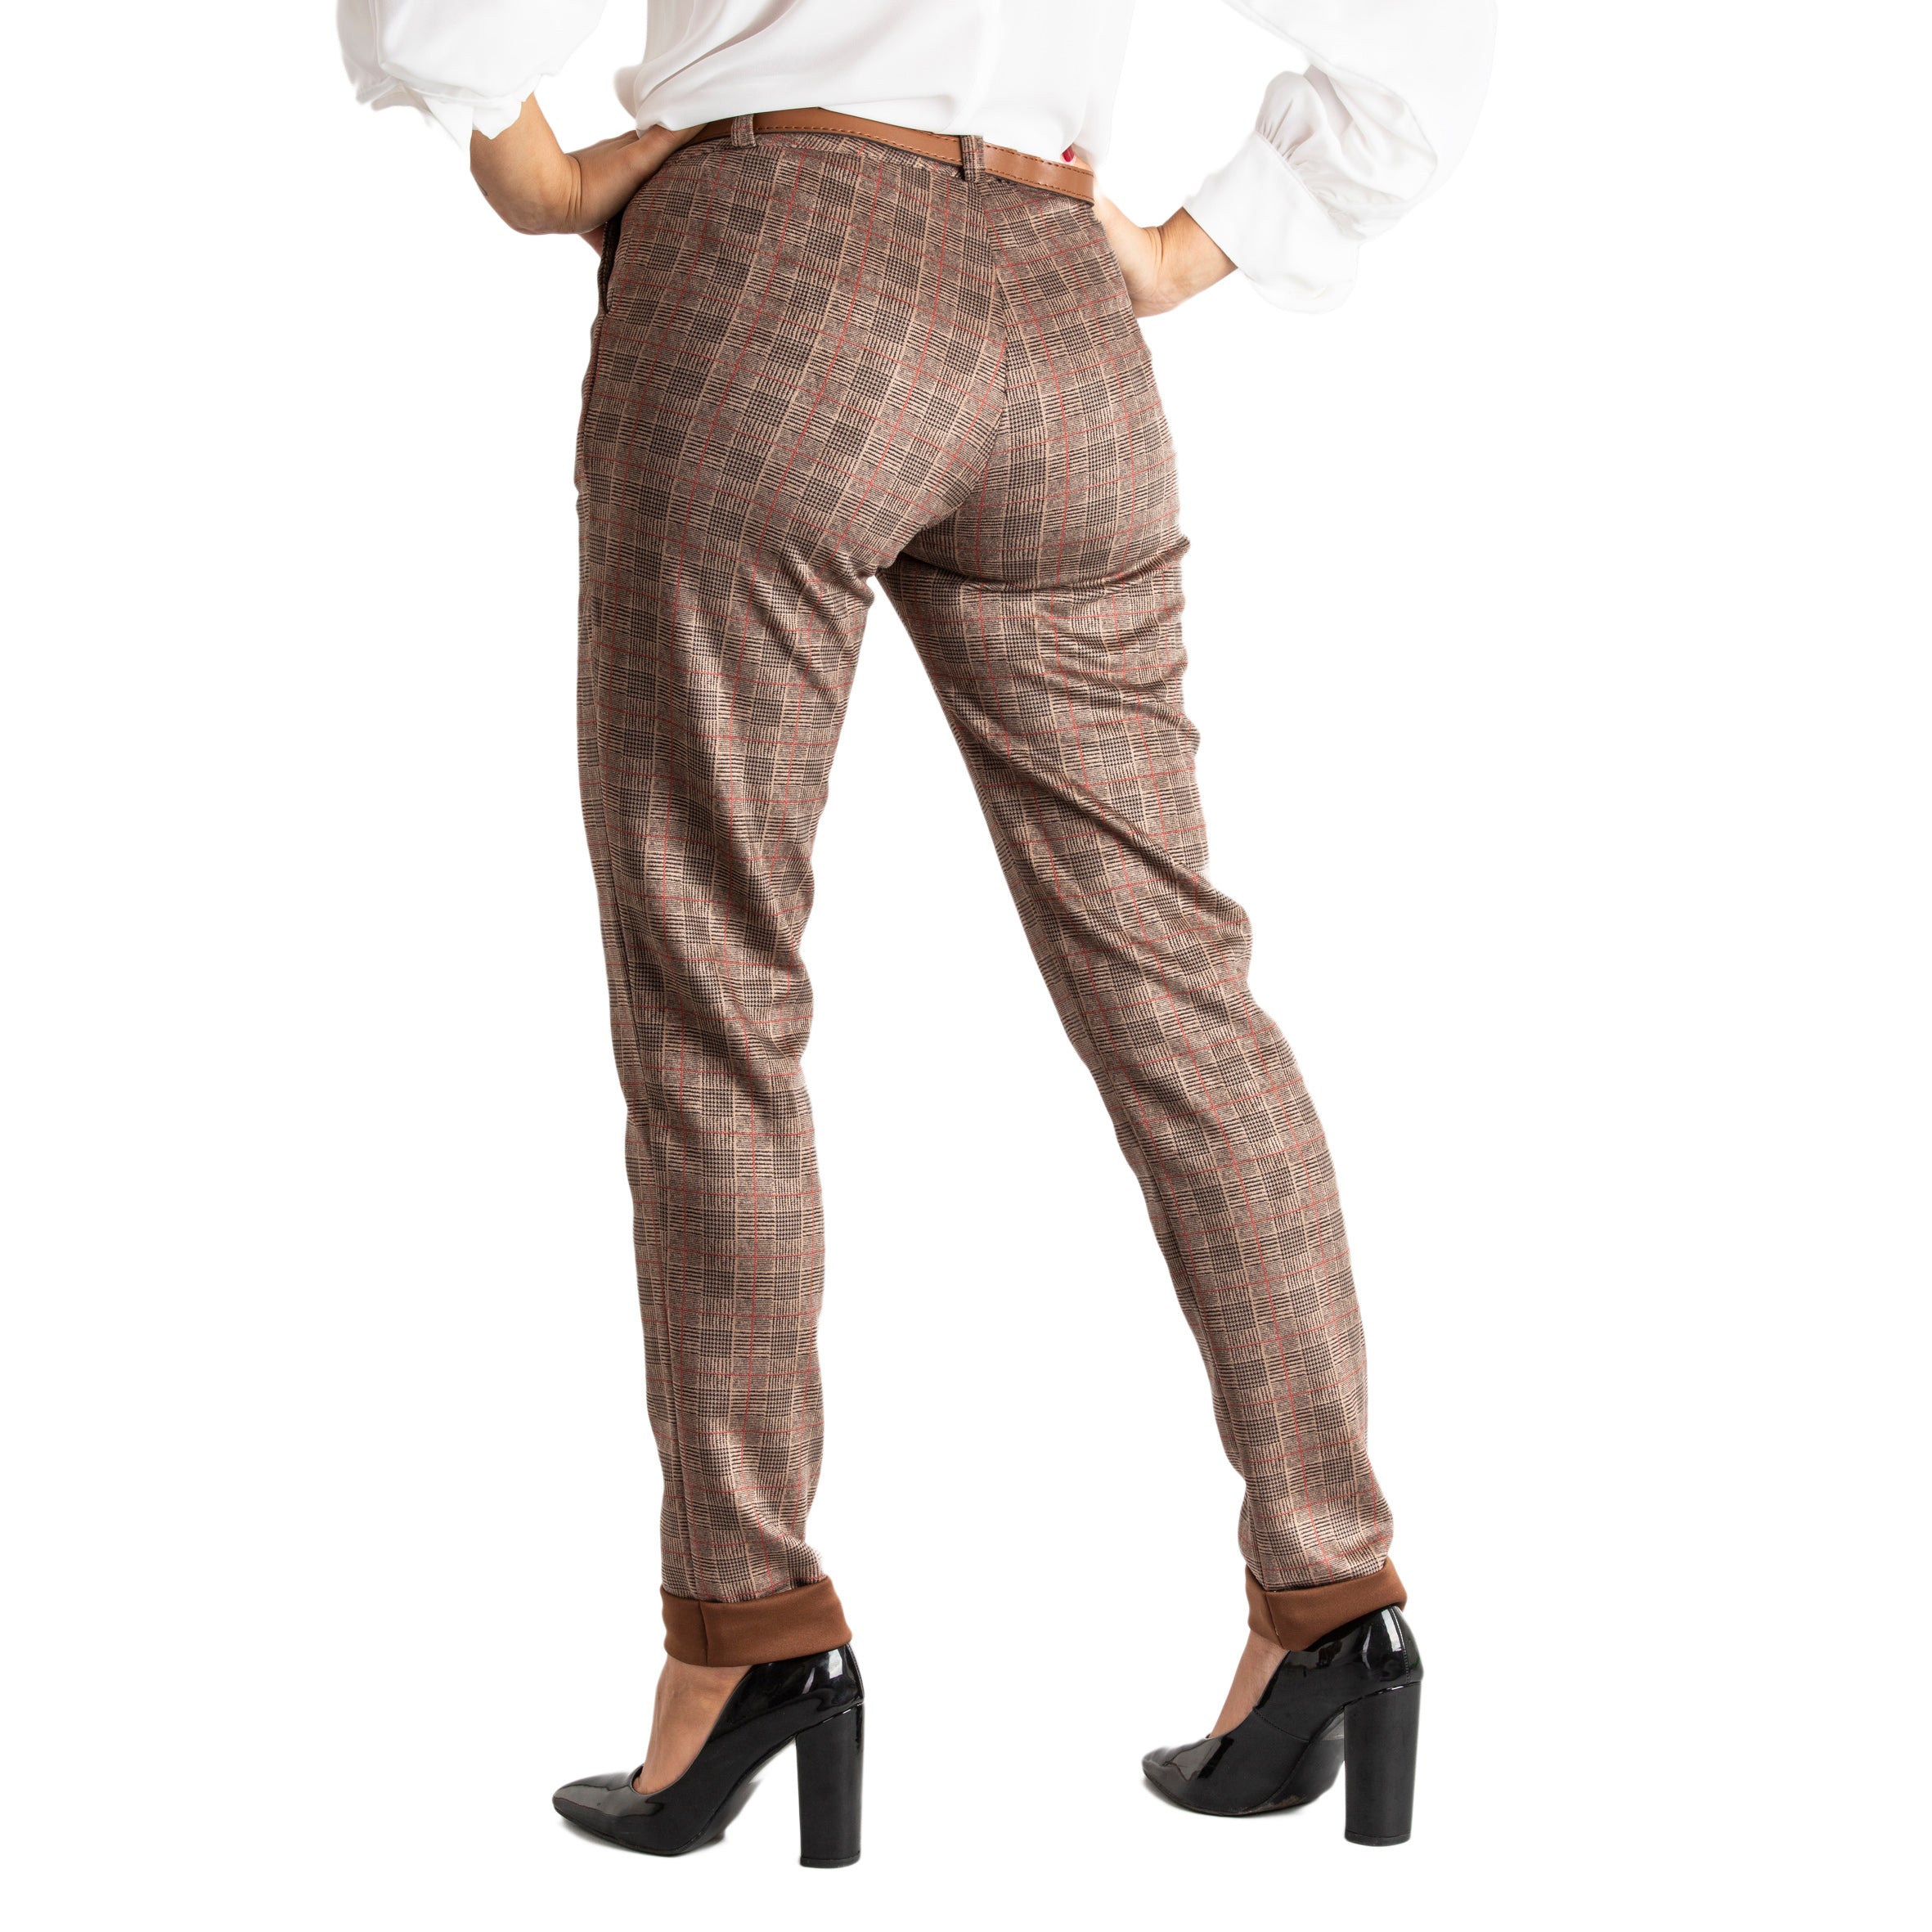 Pantalone donna slim fit con tasche e cintura casual made in italy 1436